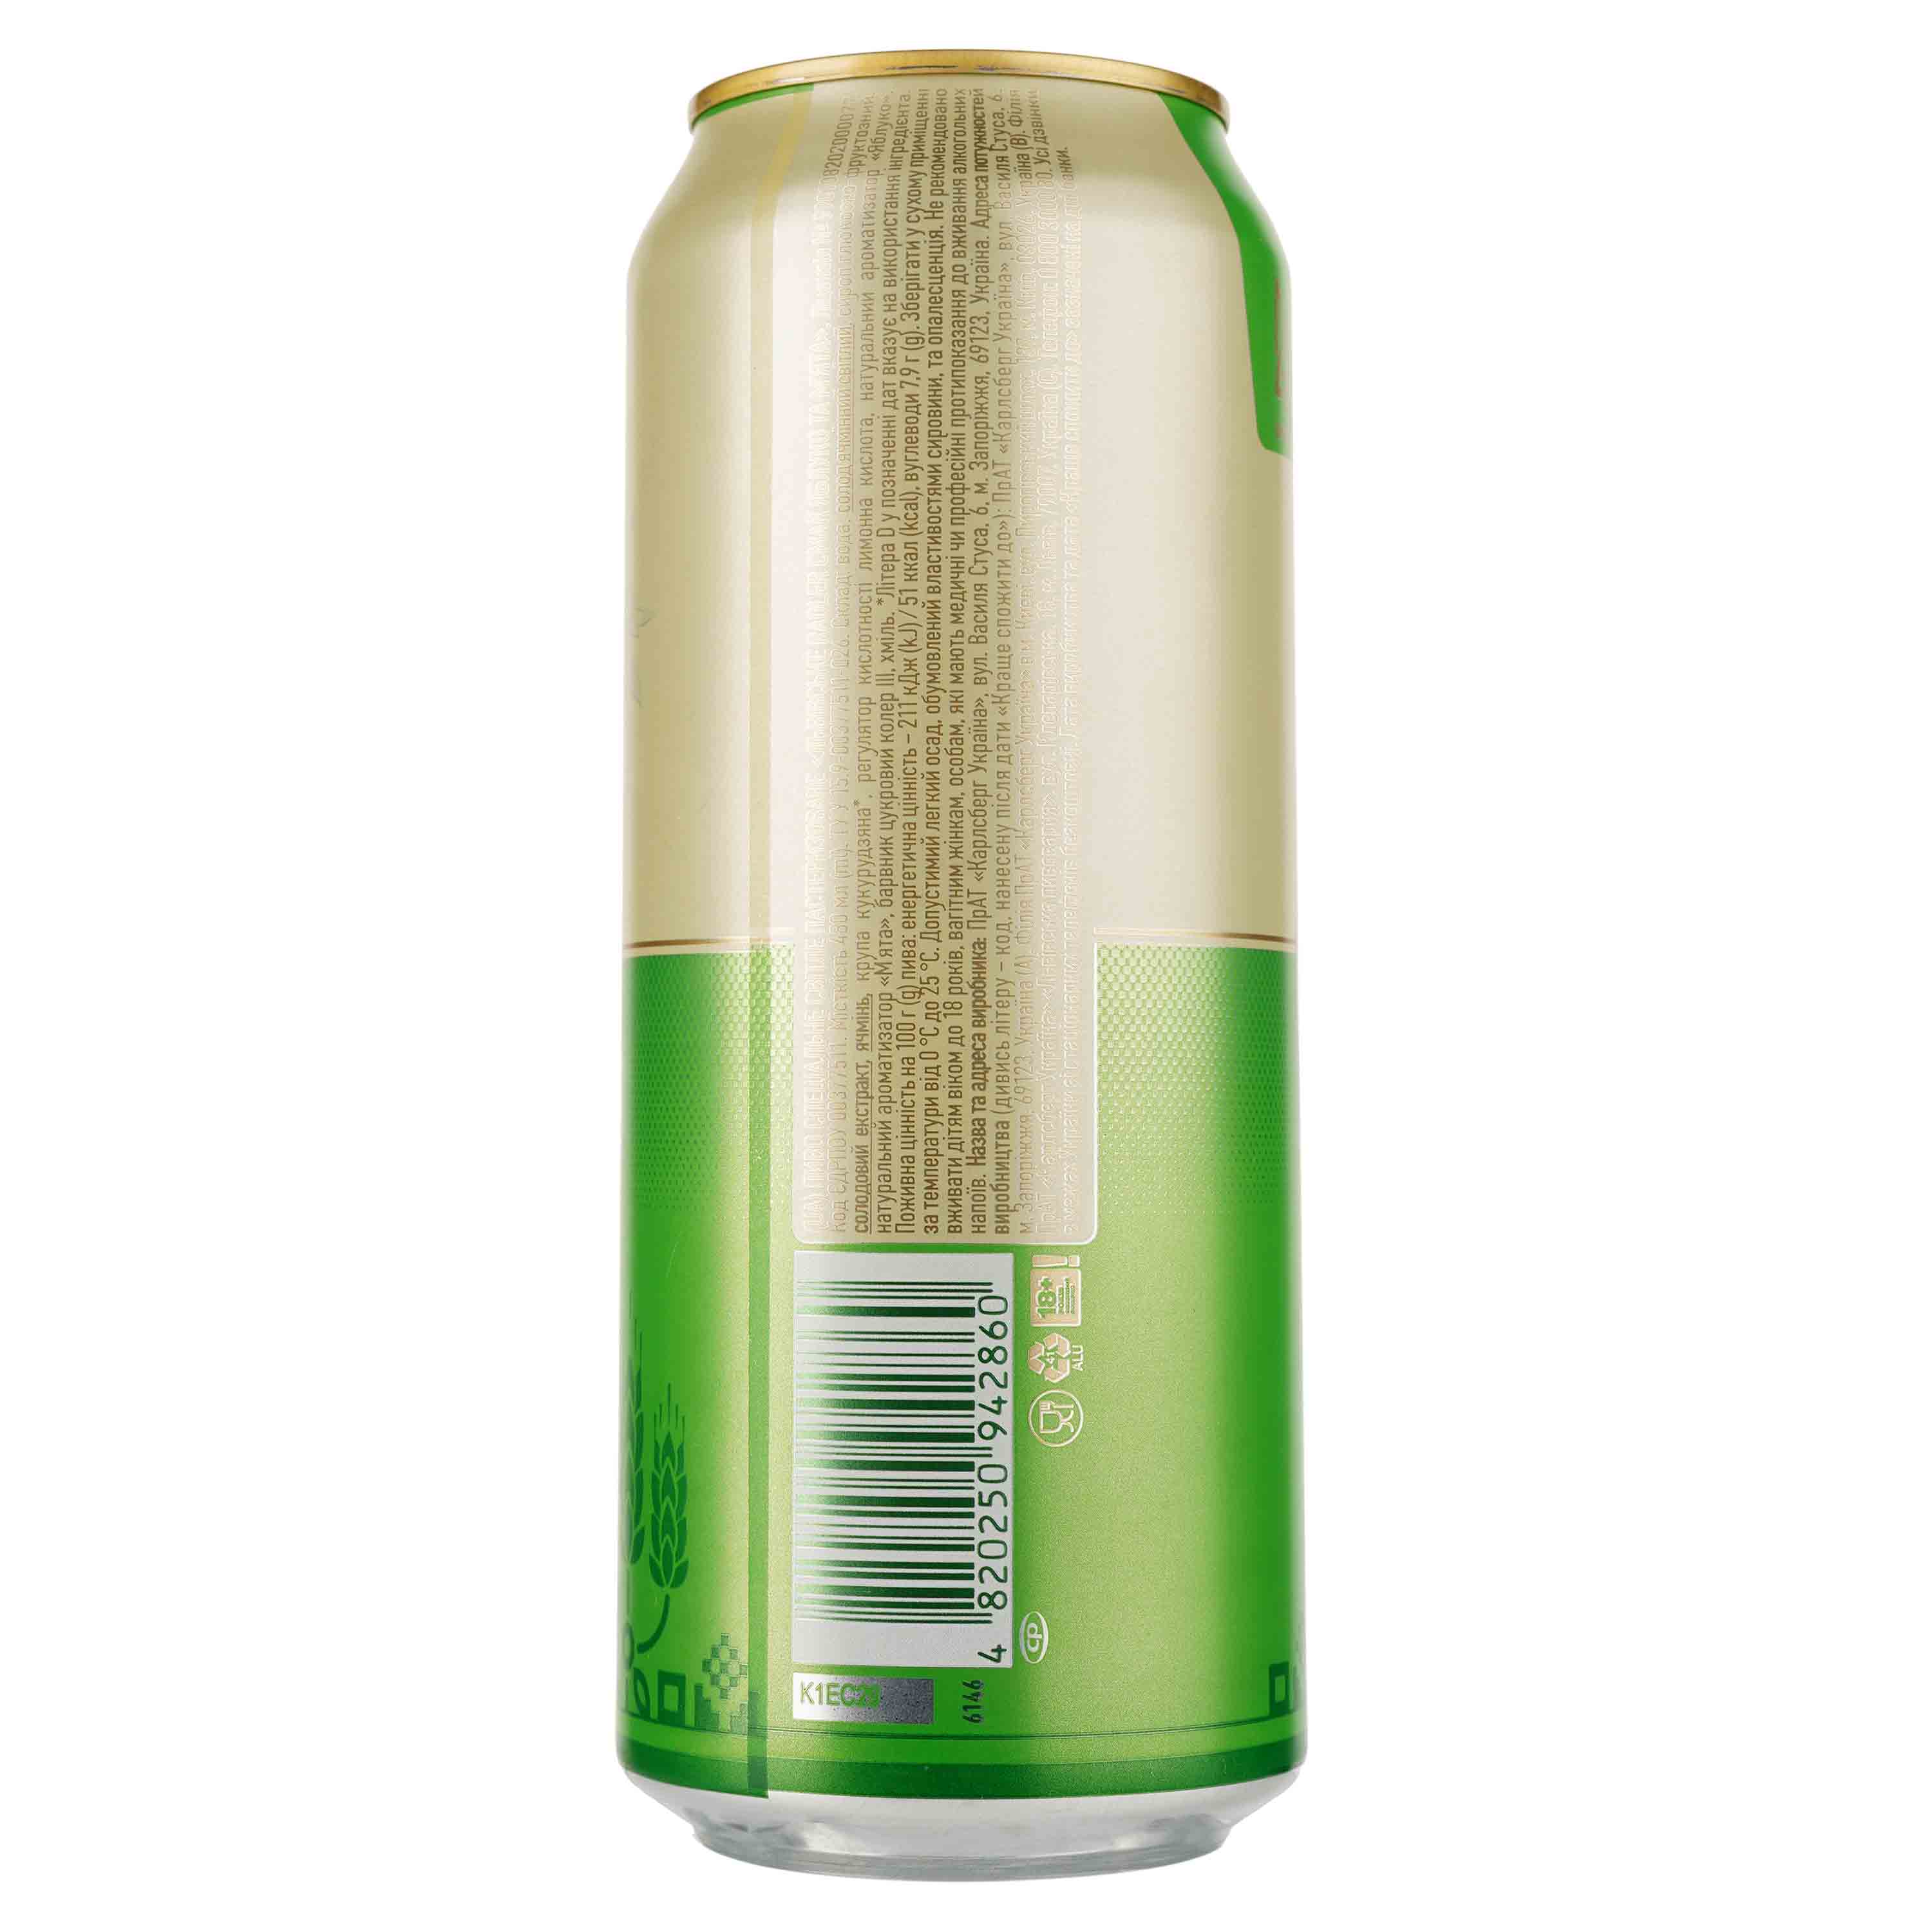 Пиво Львівське Radler Яблоко и мята, светлое, 3,5%, ж/б, 0,48 л - фото 2